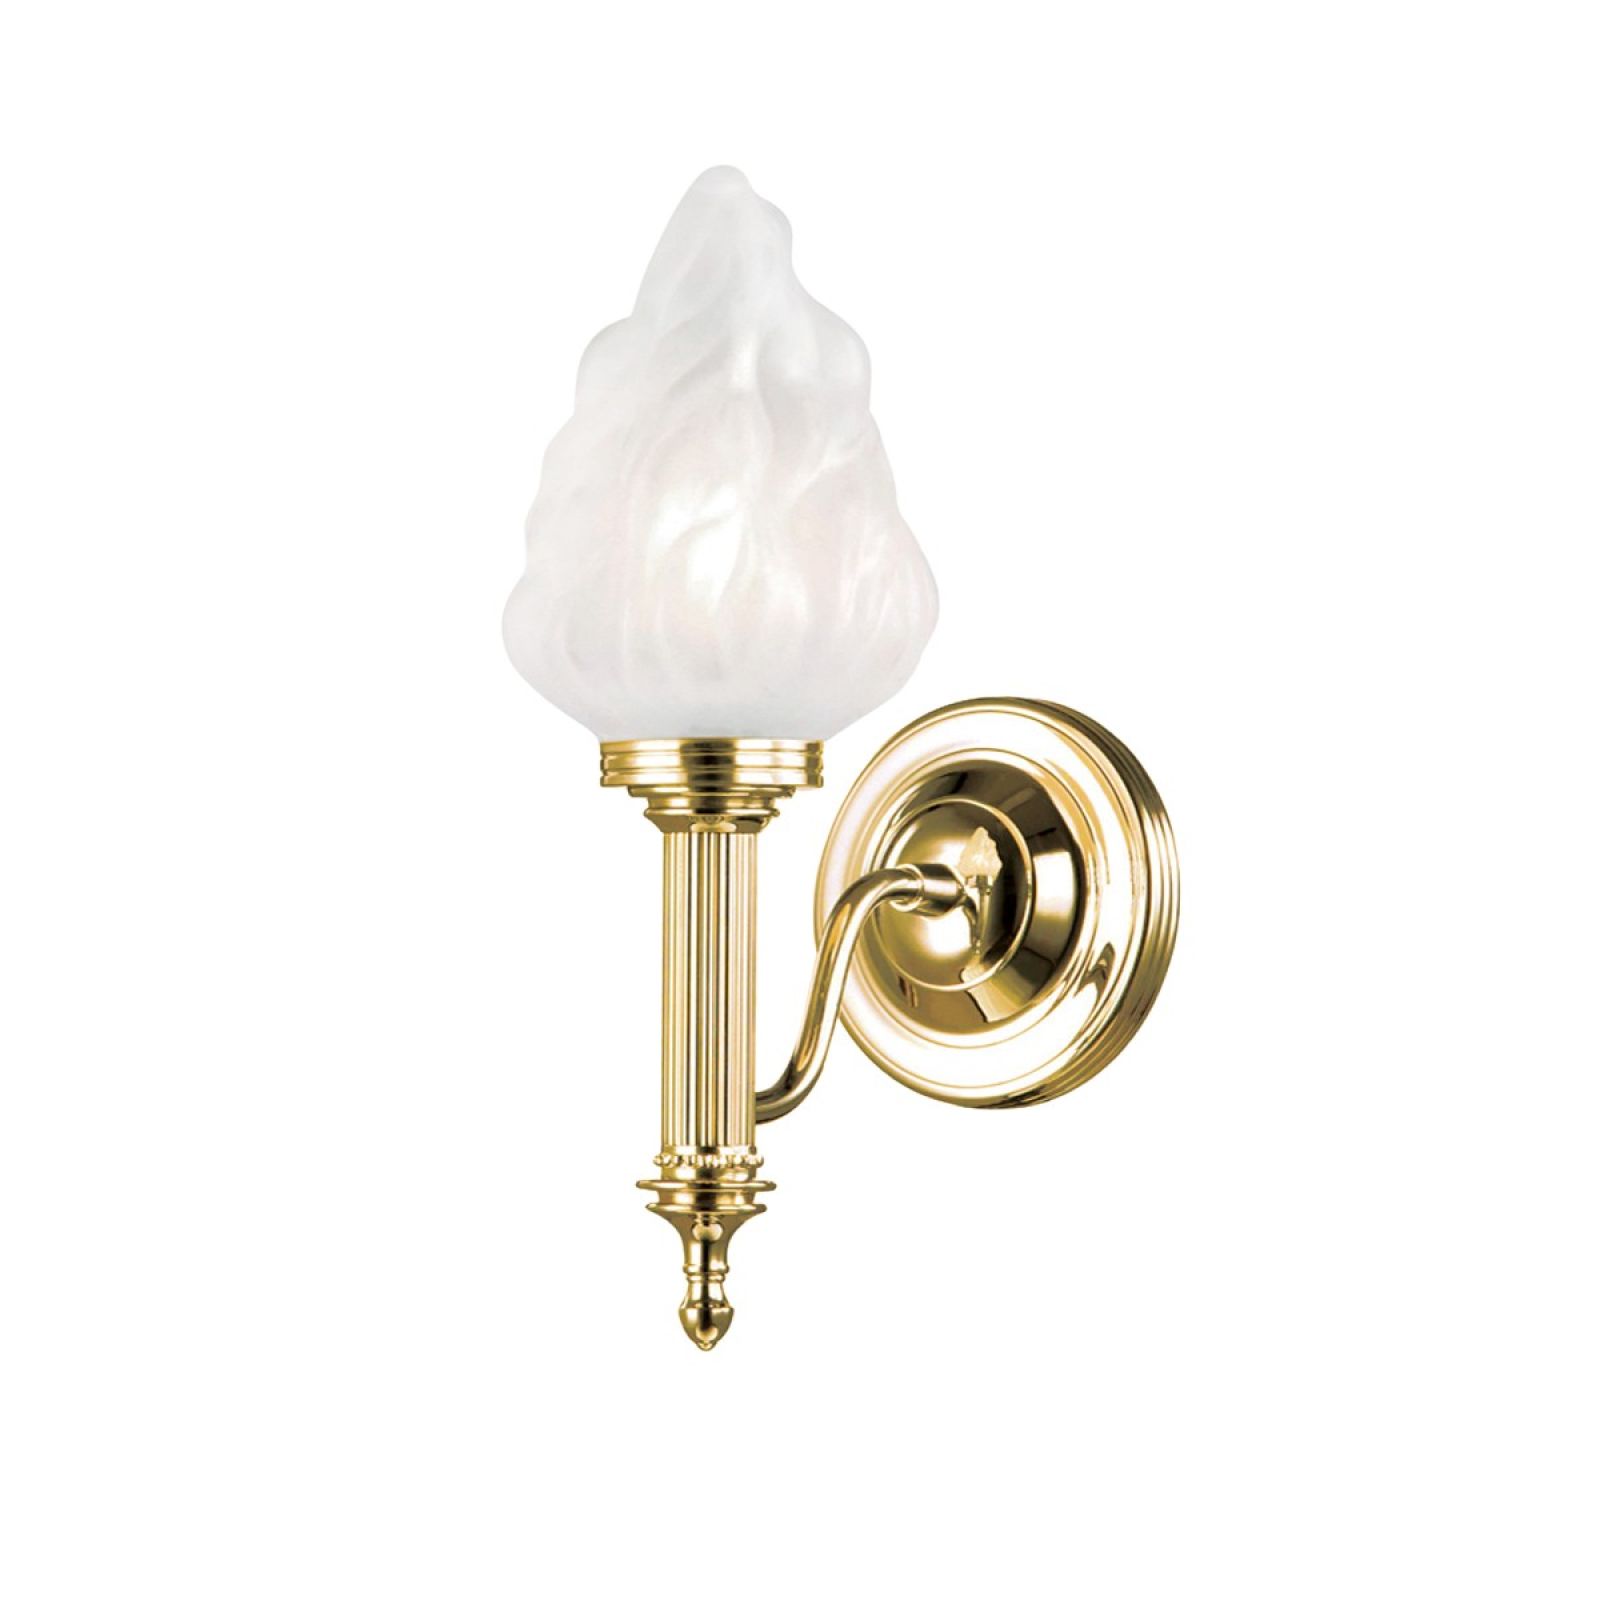 Bathroom wall light - Carol 3 in polished brass